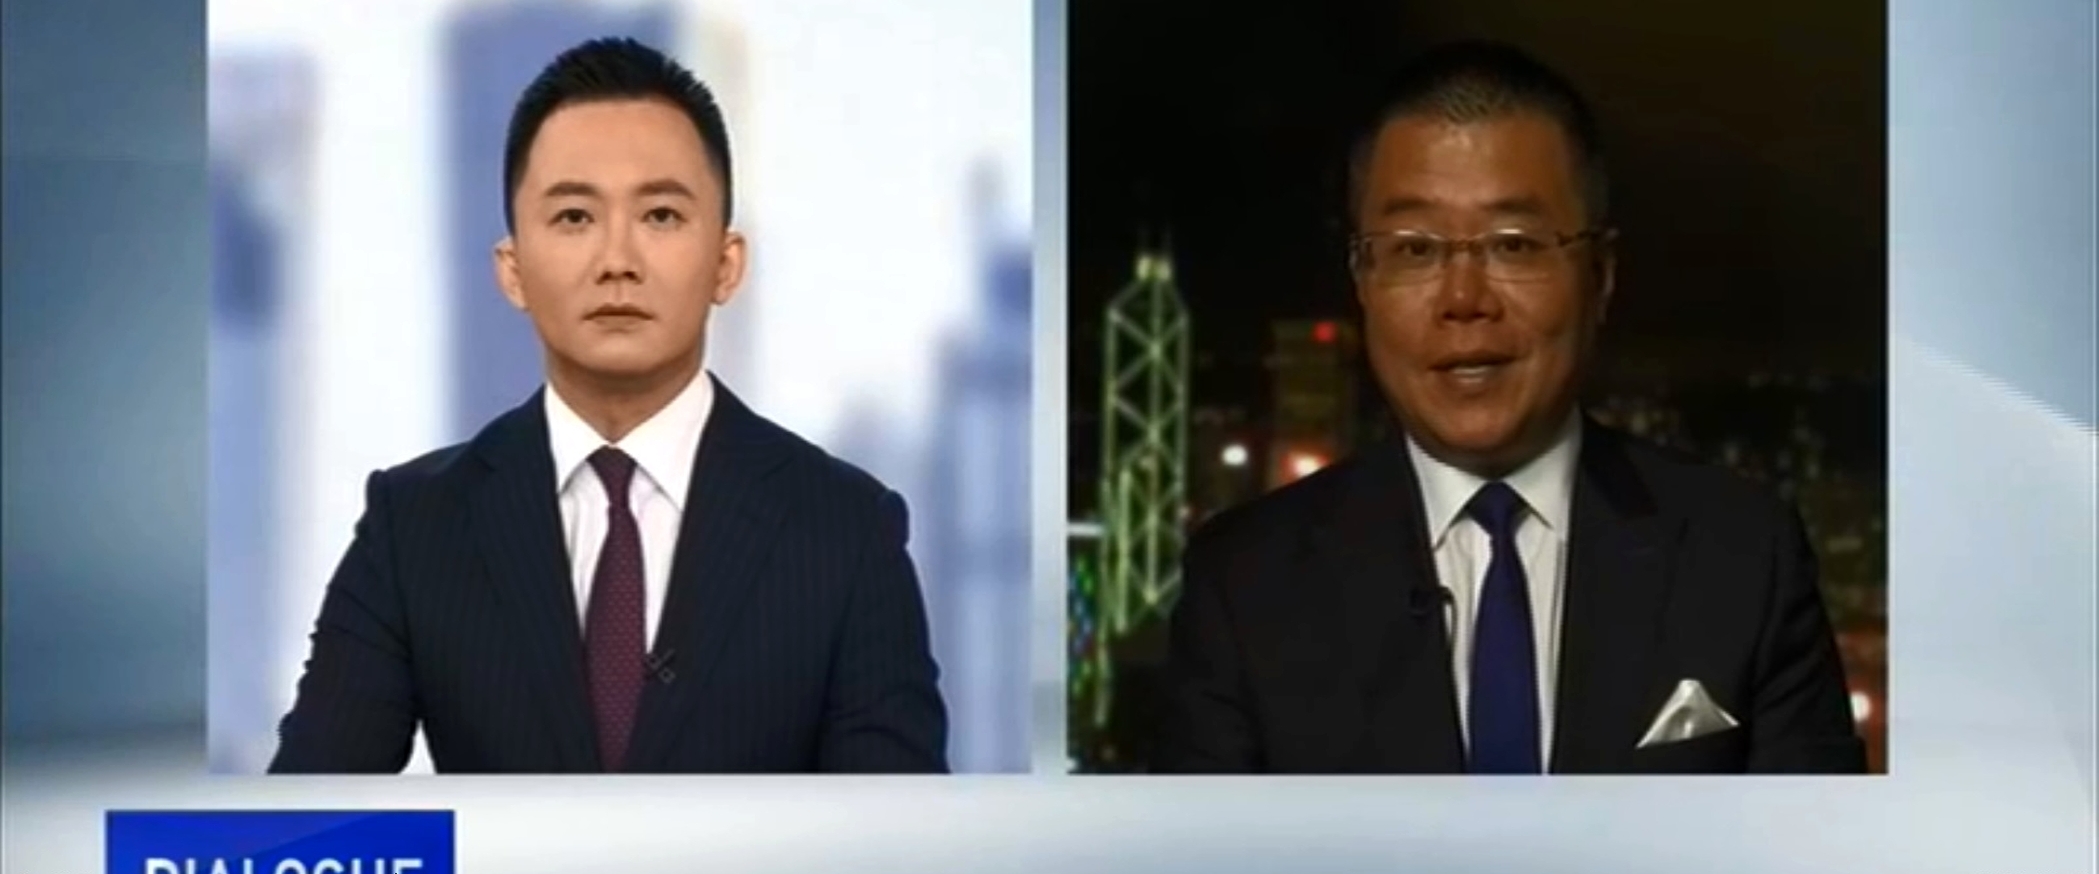 Dialogue with Yang Rui – Crisis in Hong Kong